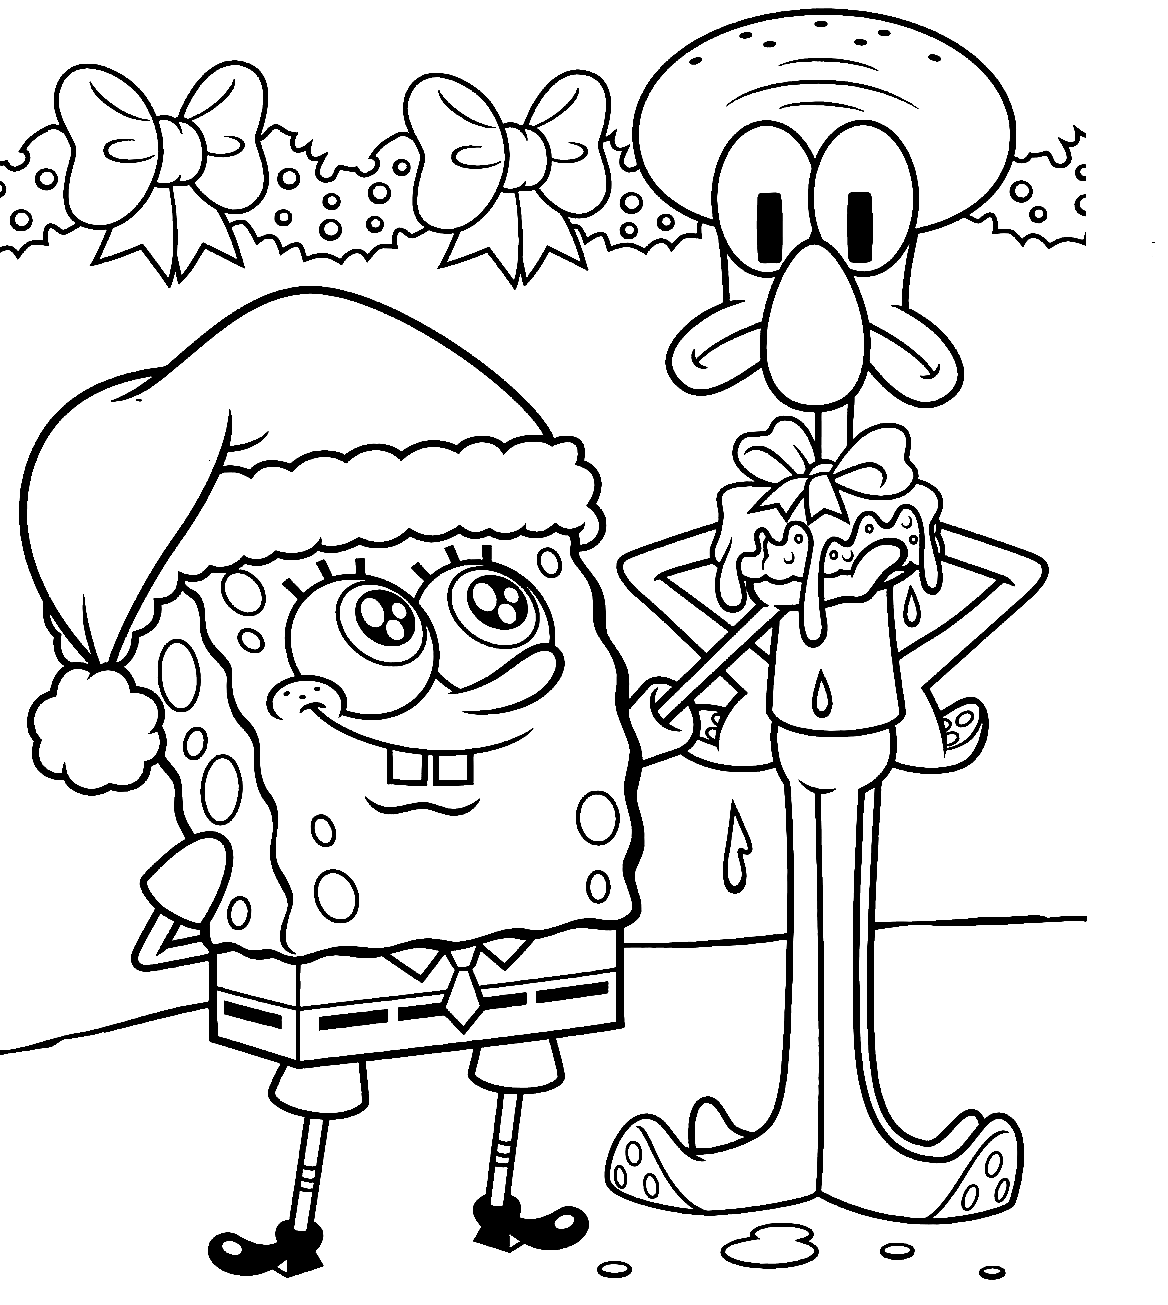 Tentacoli Squidward e Pagina da colorare di SpongeBob